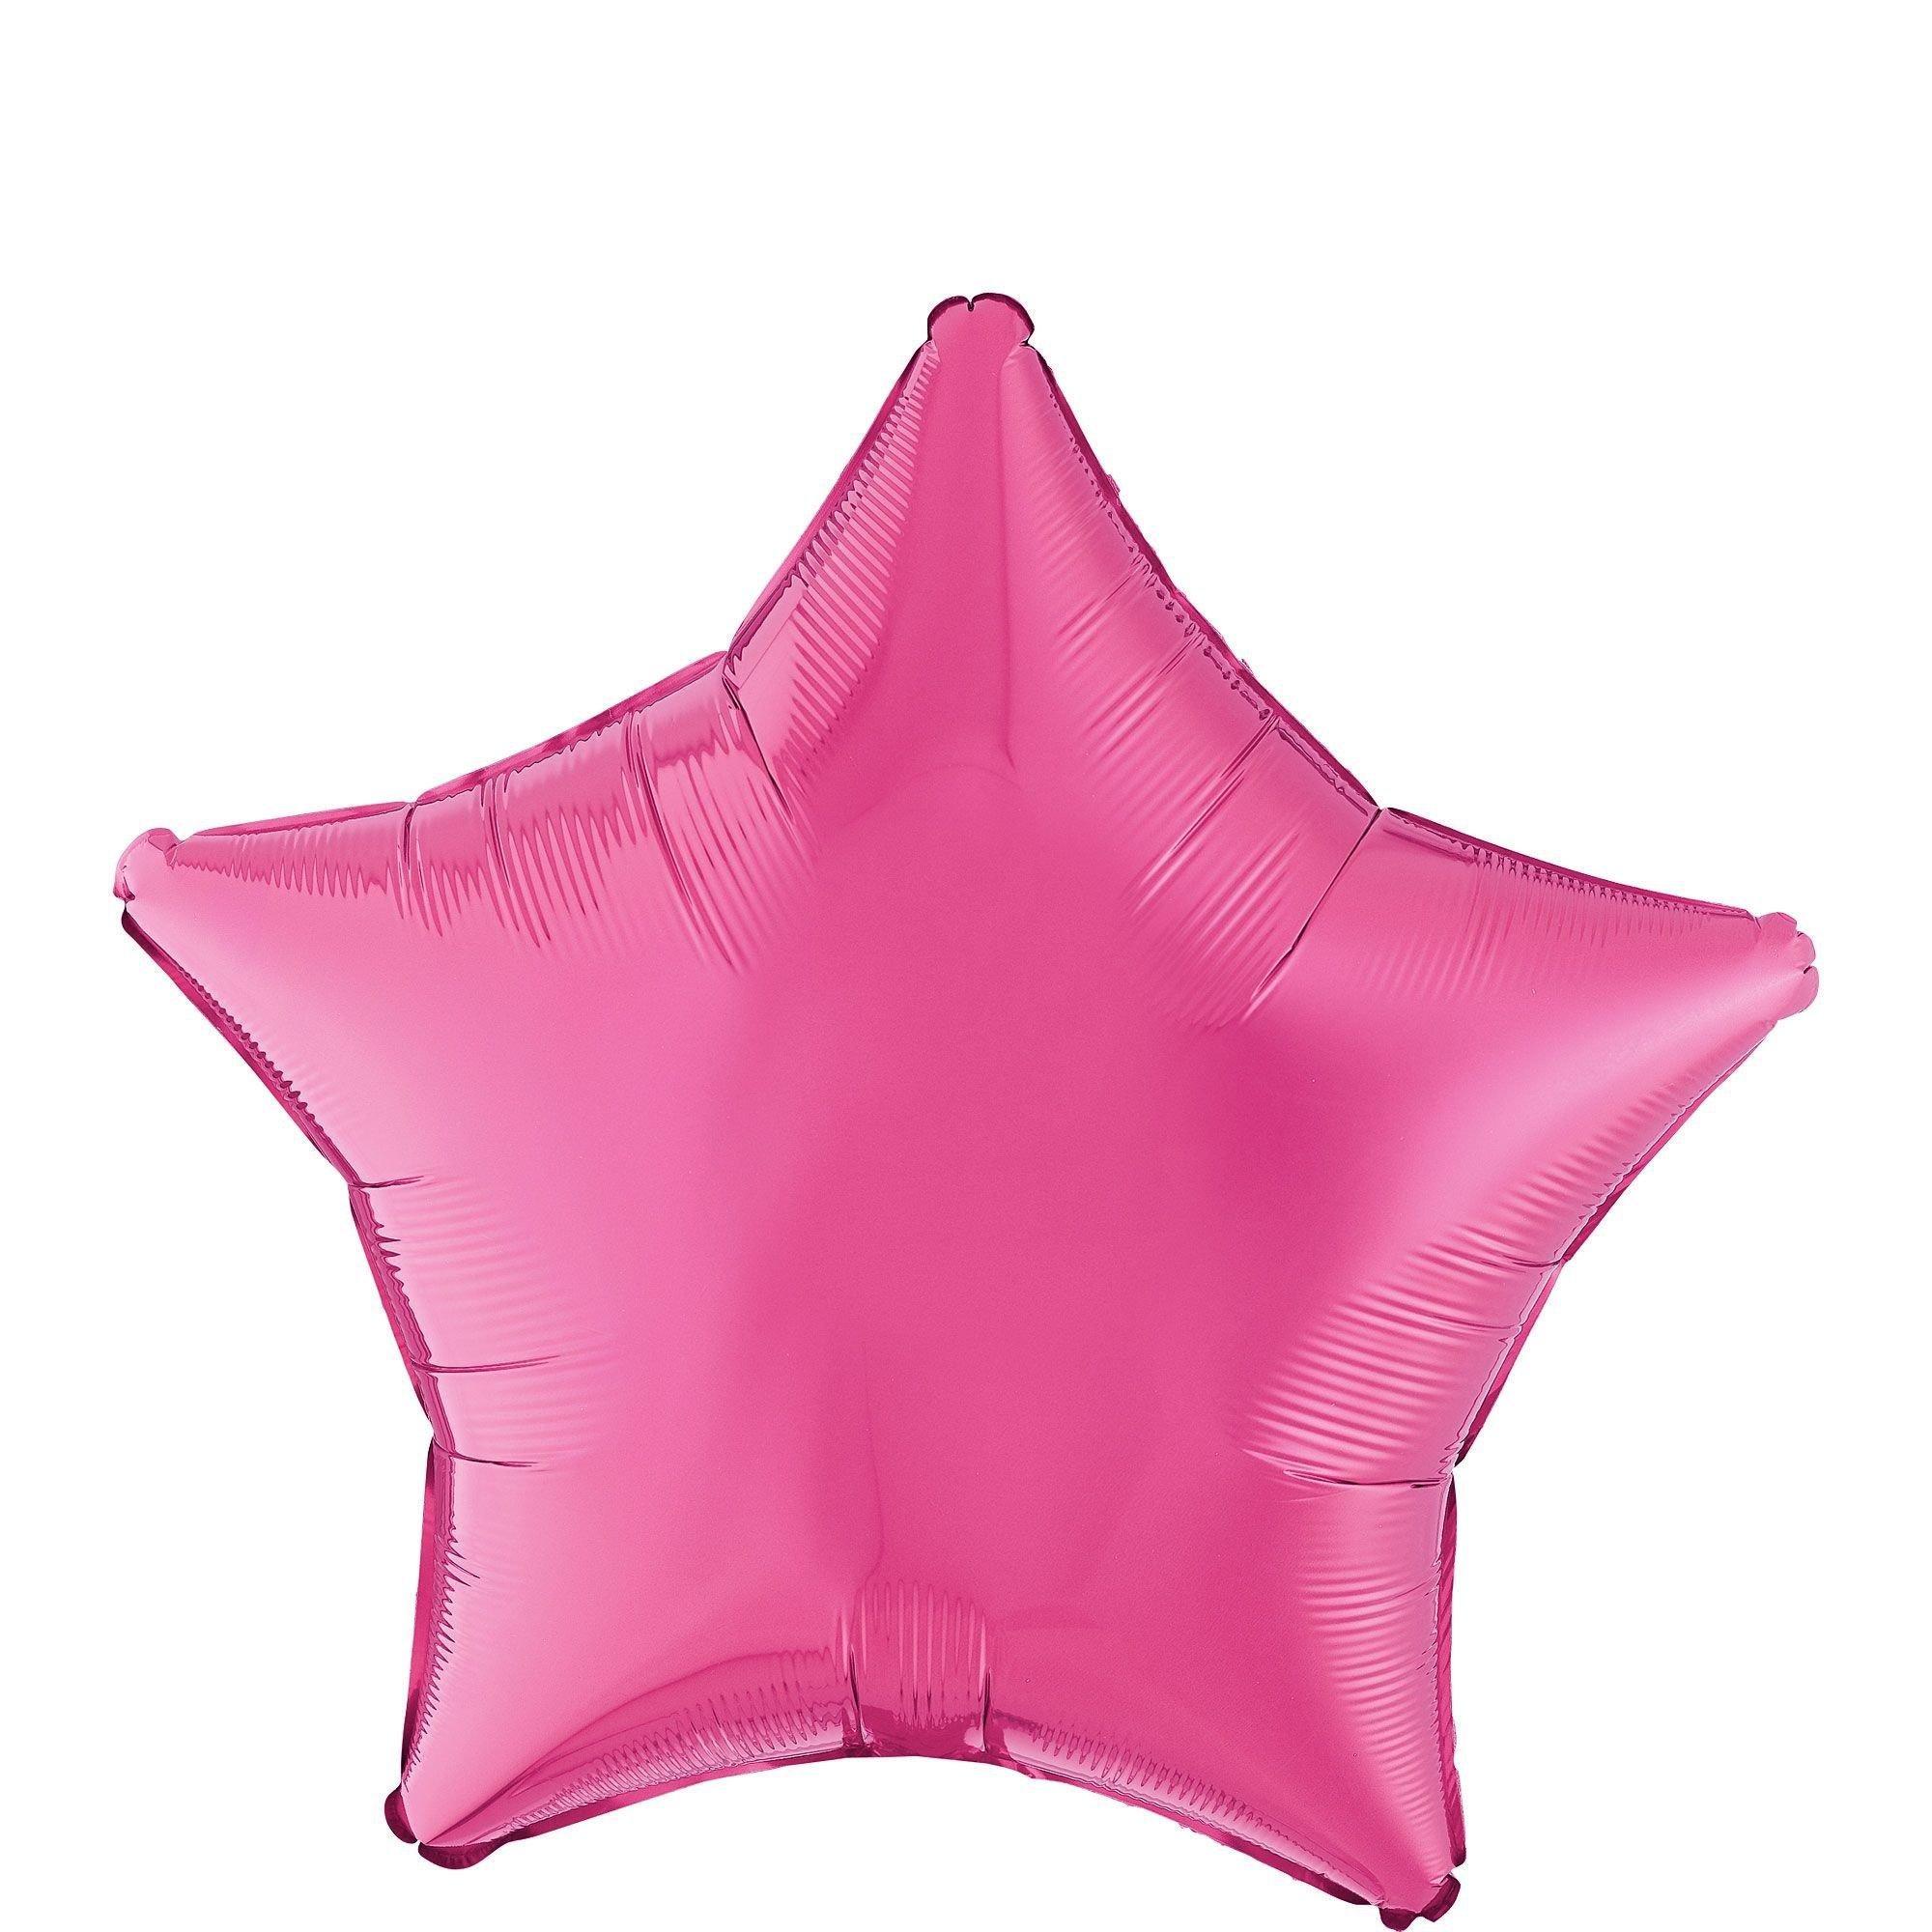 Ballons confettis Happy Birthday botanique - MODERN CONFETTI